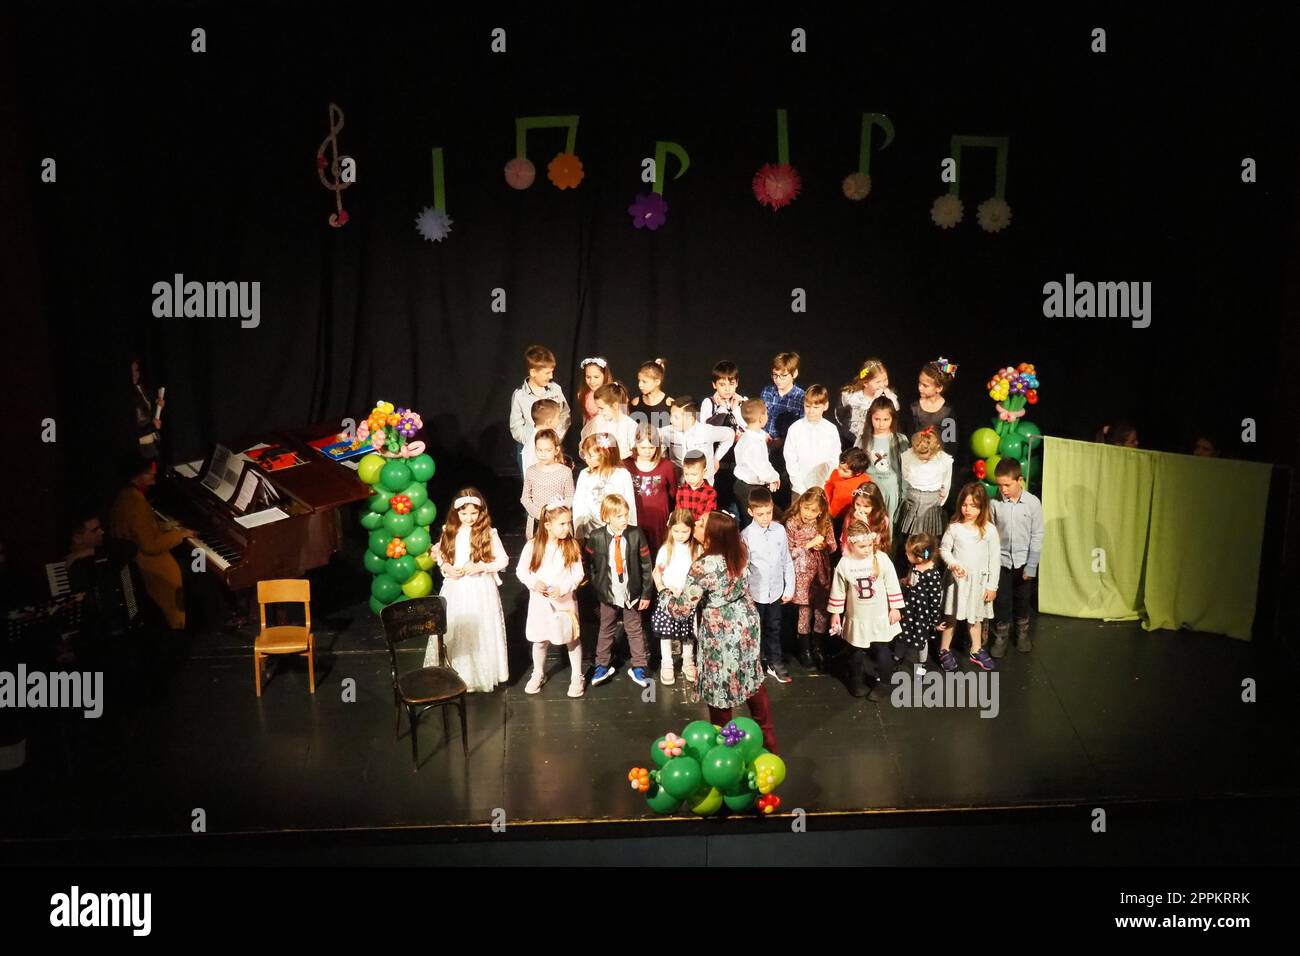 Sremska Mitrovica, Serbien, 8. März 2022 Kinderchorvorstellung auf der Bühne. Kinder singen. Musikalische Kindergruppe in eleganten Kostümen spielt Weihnachtslieder für Mütter. Dunkle Szene. Stockfoto